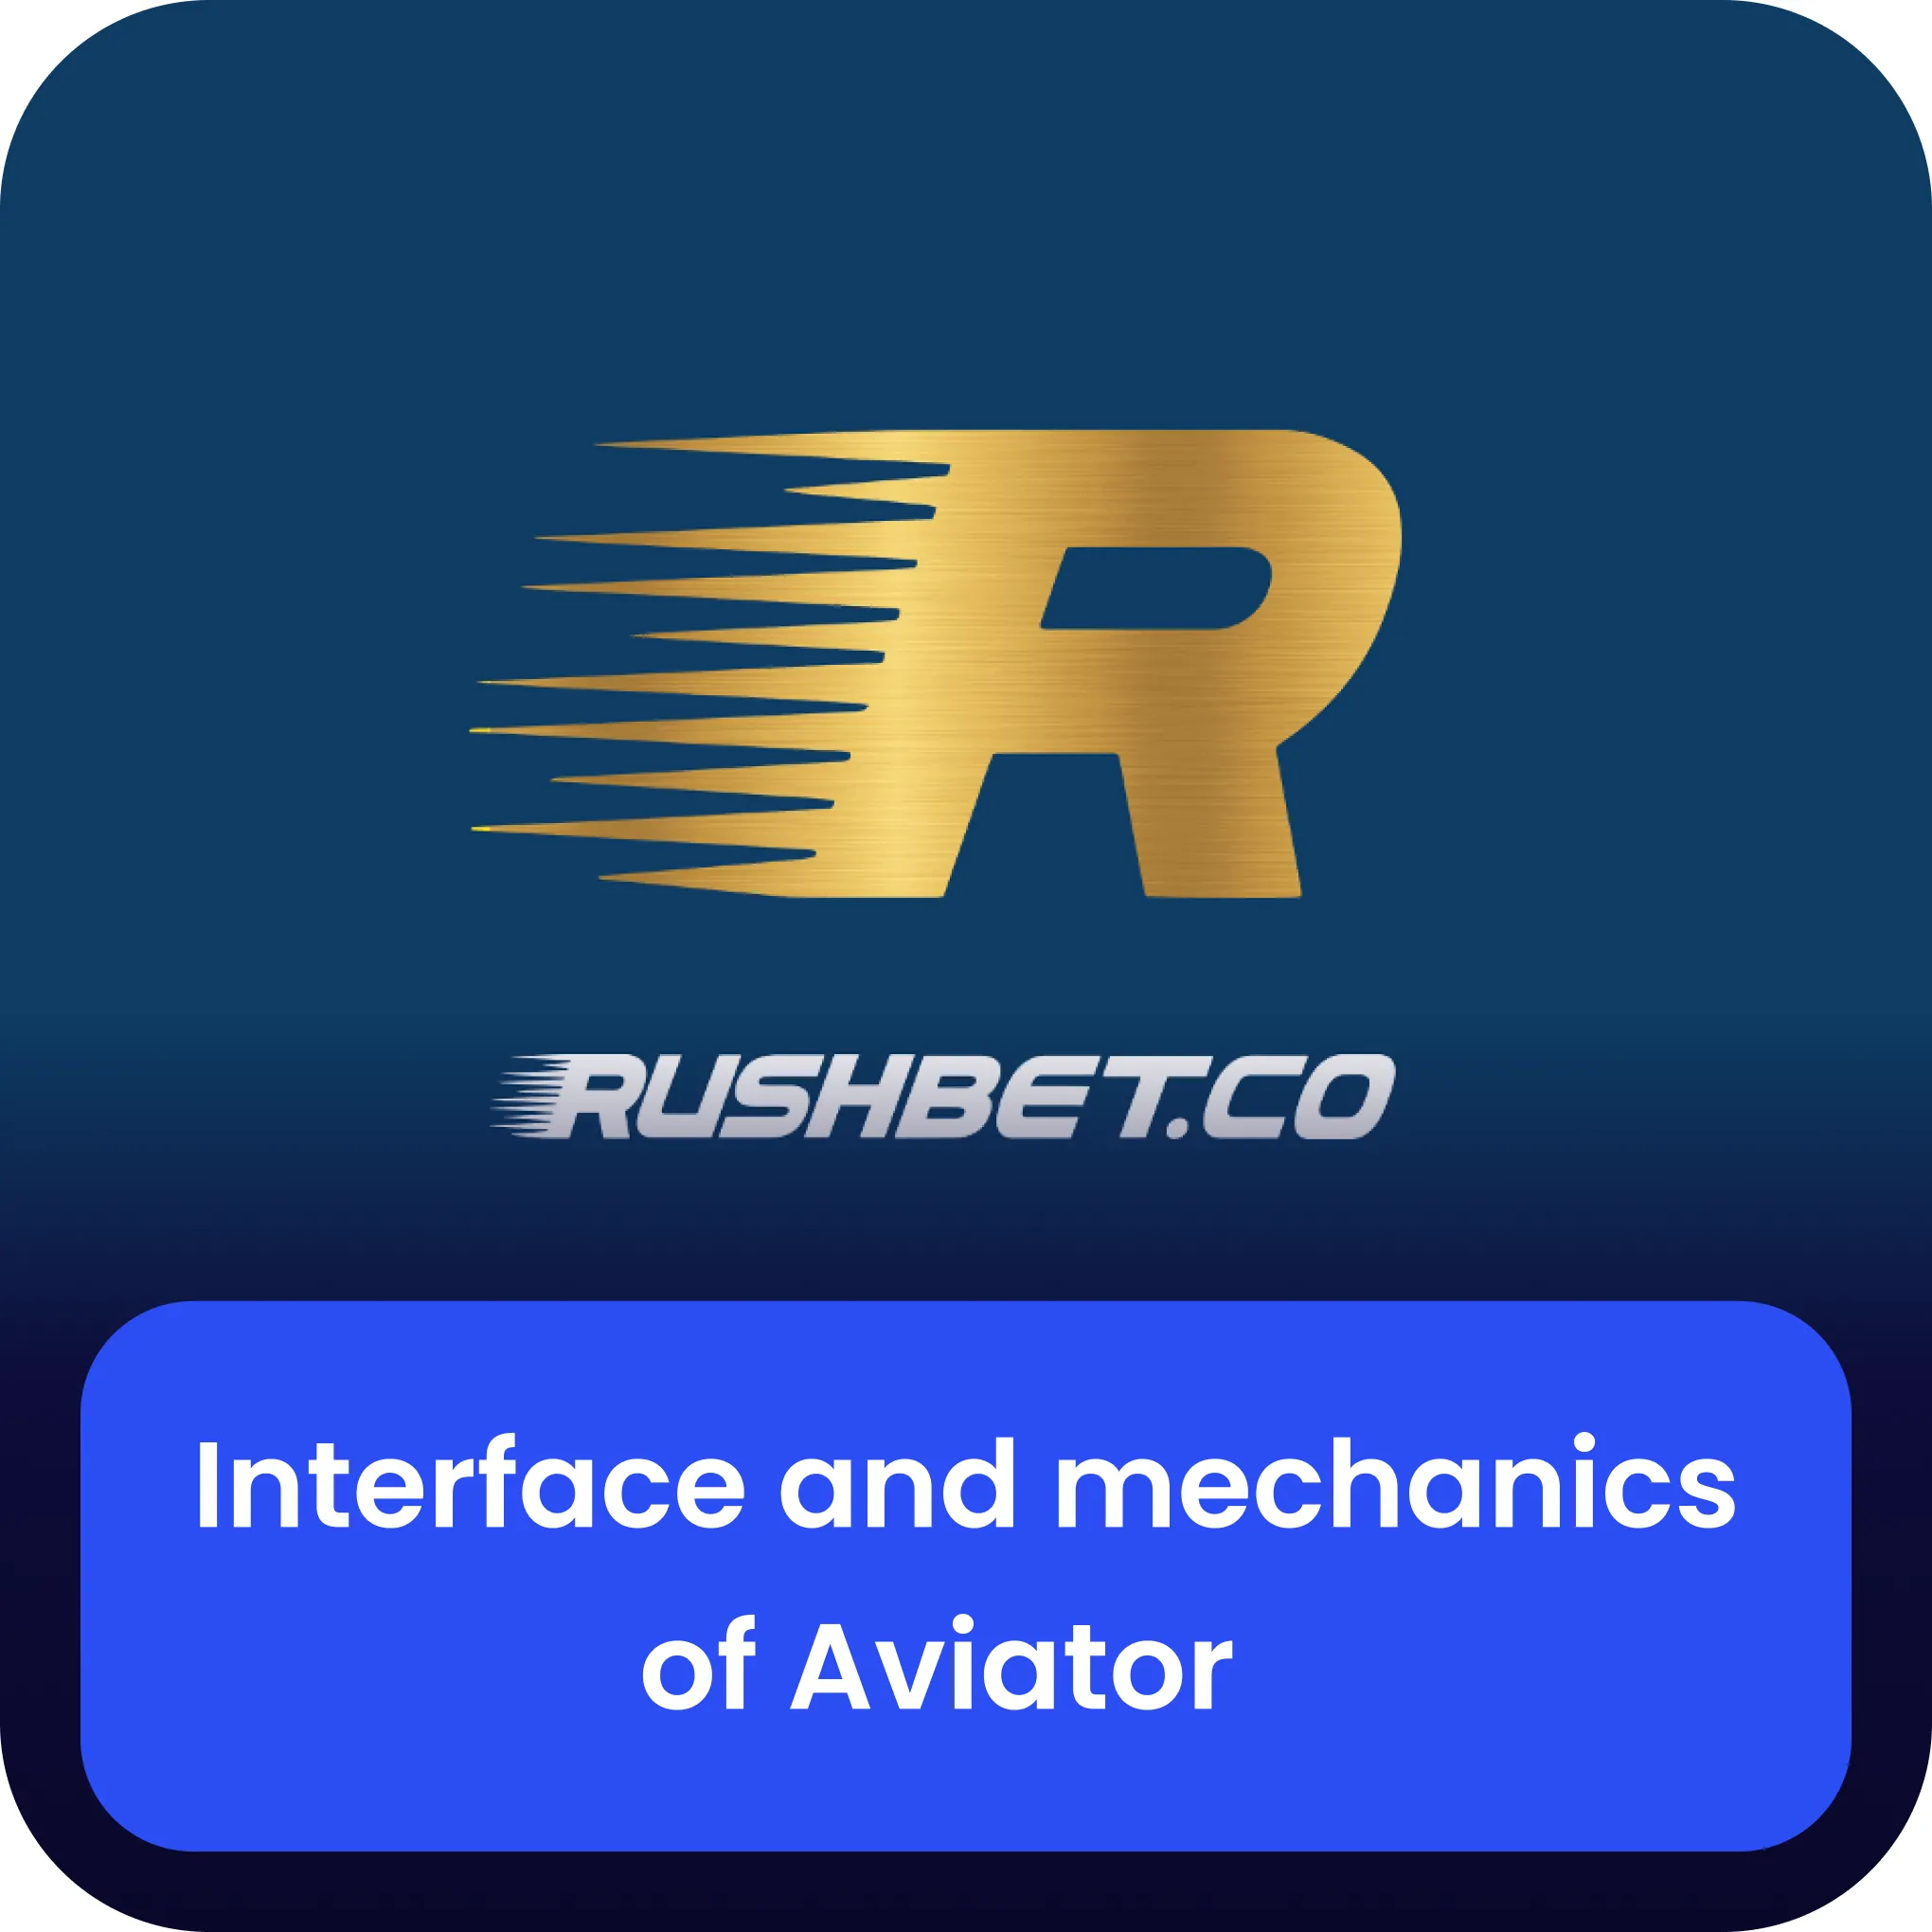 rushbet aviator interface and mechanics